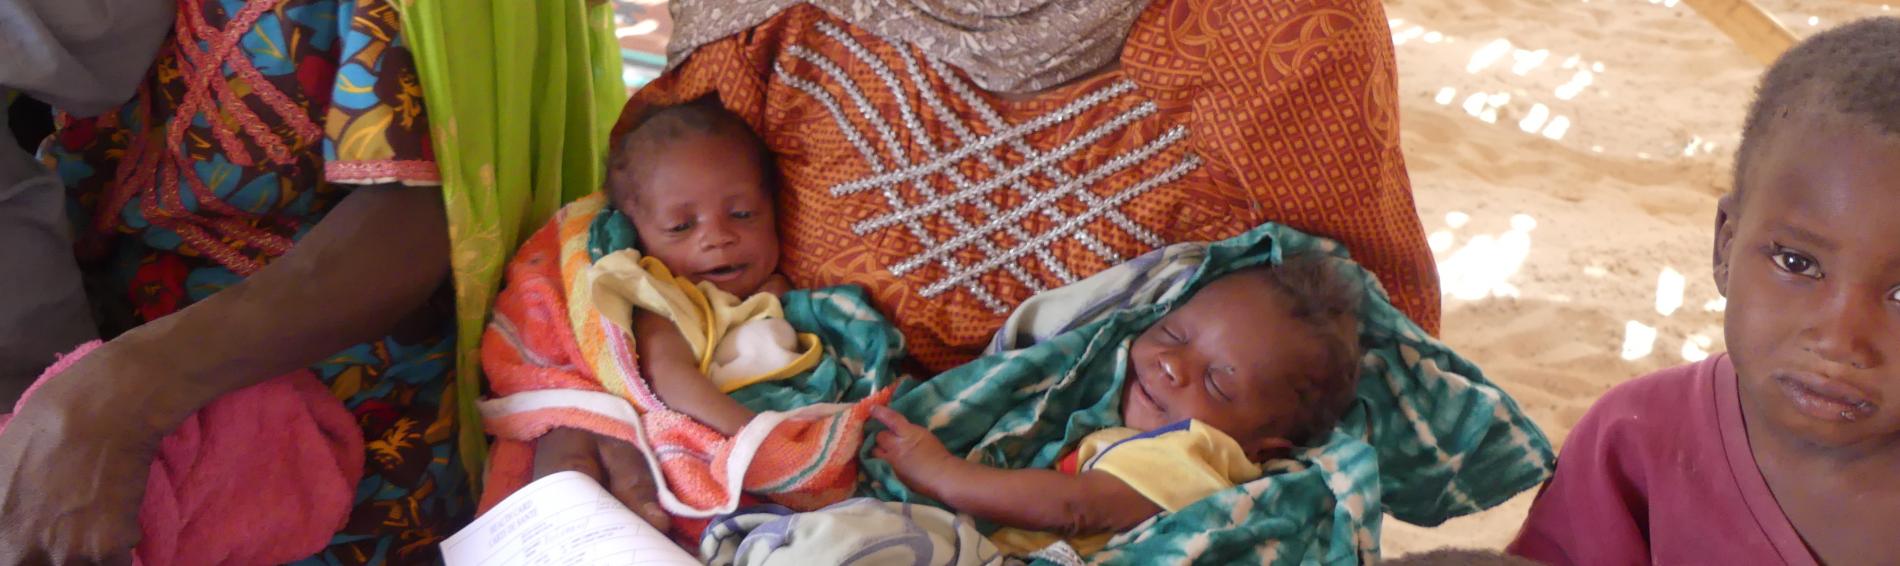 Hungerskrise in Somalia. Wir helfen. Foto: Ärzte der Welt